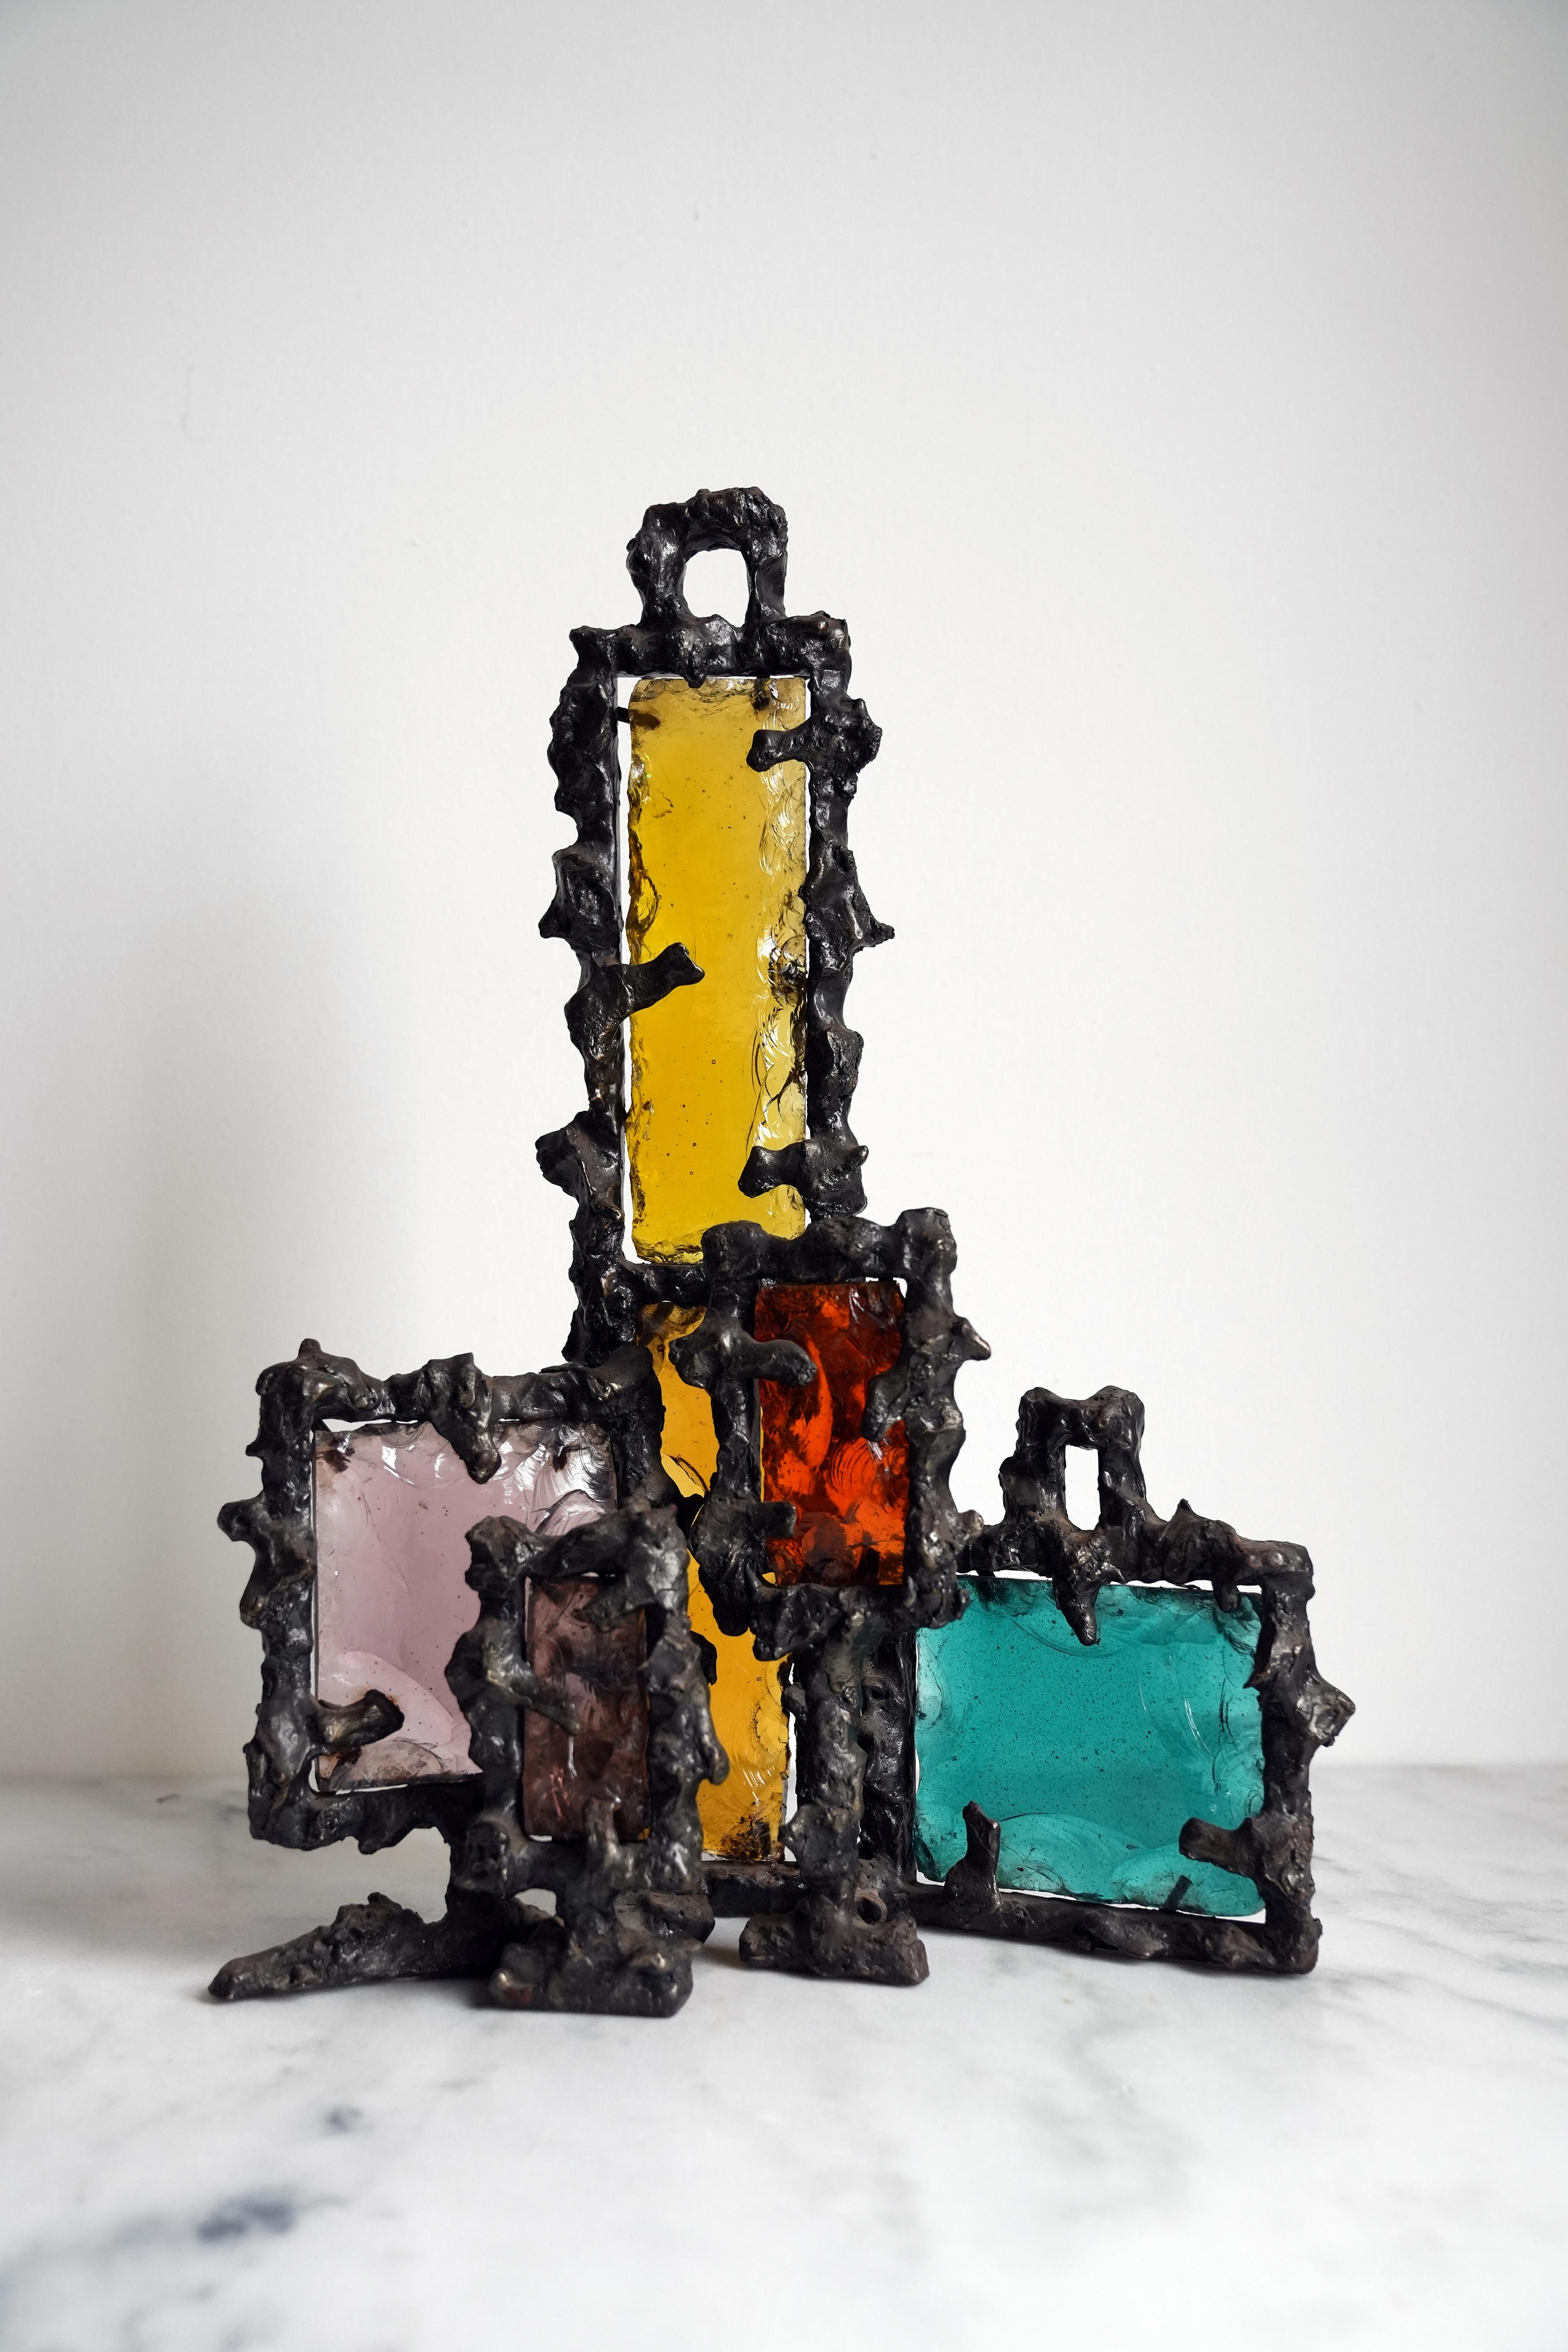 Marcello Fantoni Brutalist sculpture.
Iron and colored glass.